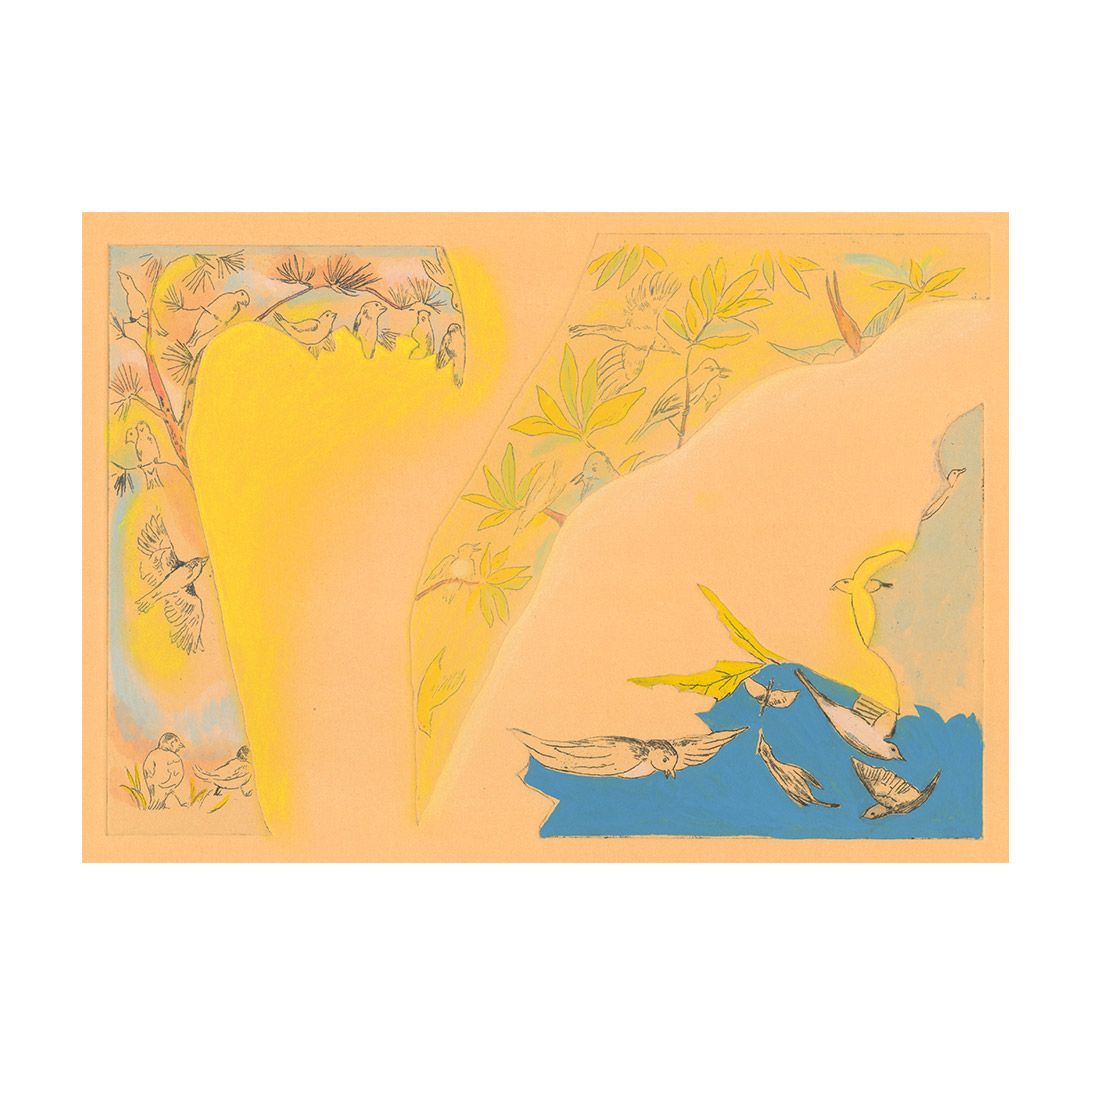 ＜集英社＞ 山本容子作(ヤマモトヨウコ サク)/『春』銅版画、手彩色画像